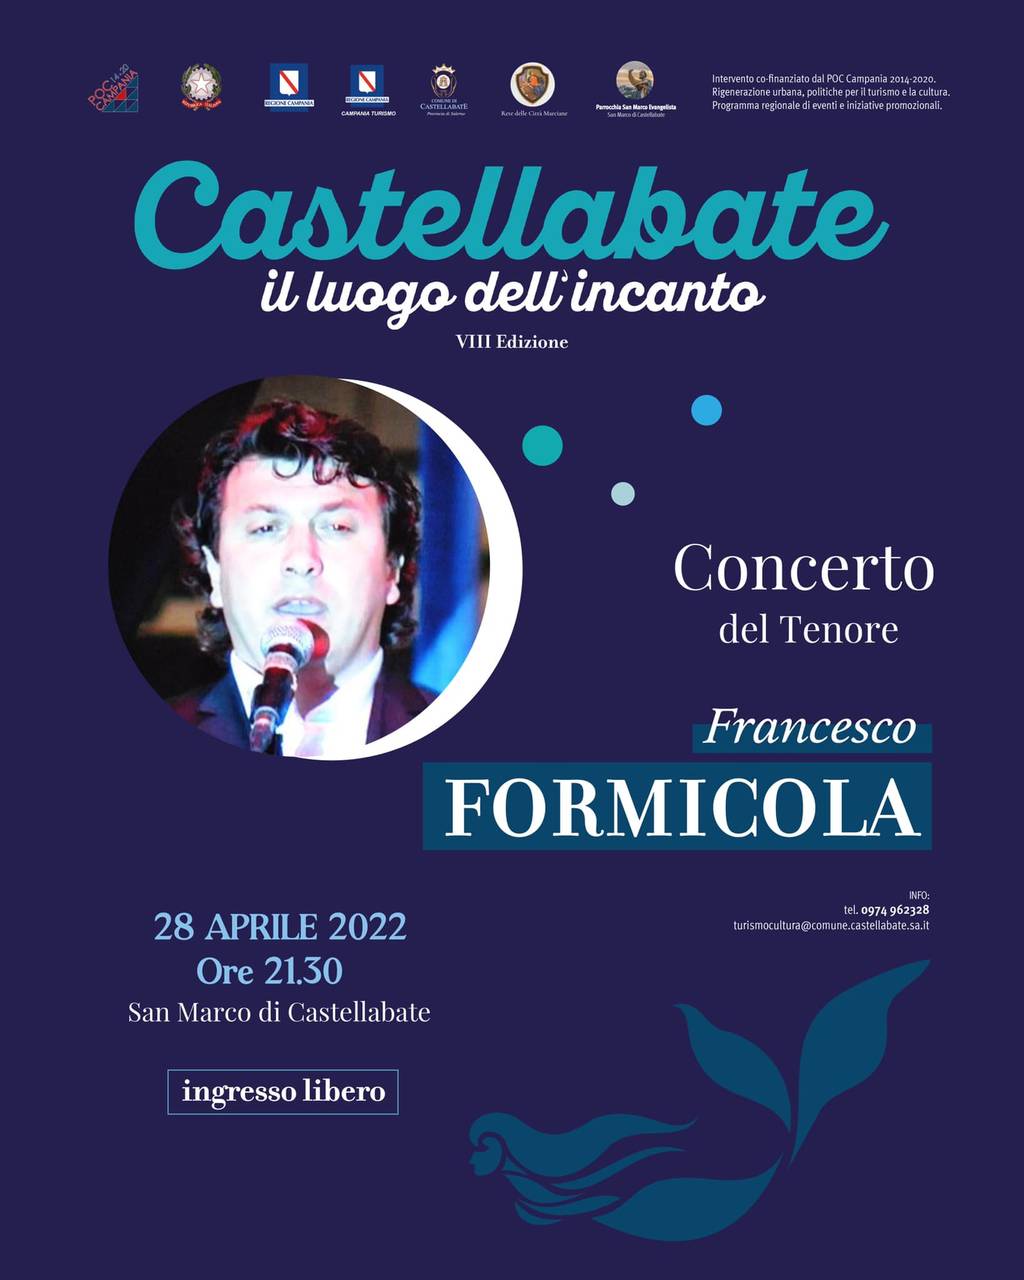 Concerto del Tenore: Francesco Formicola